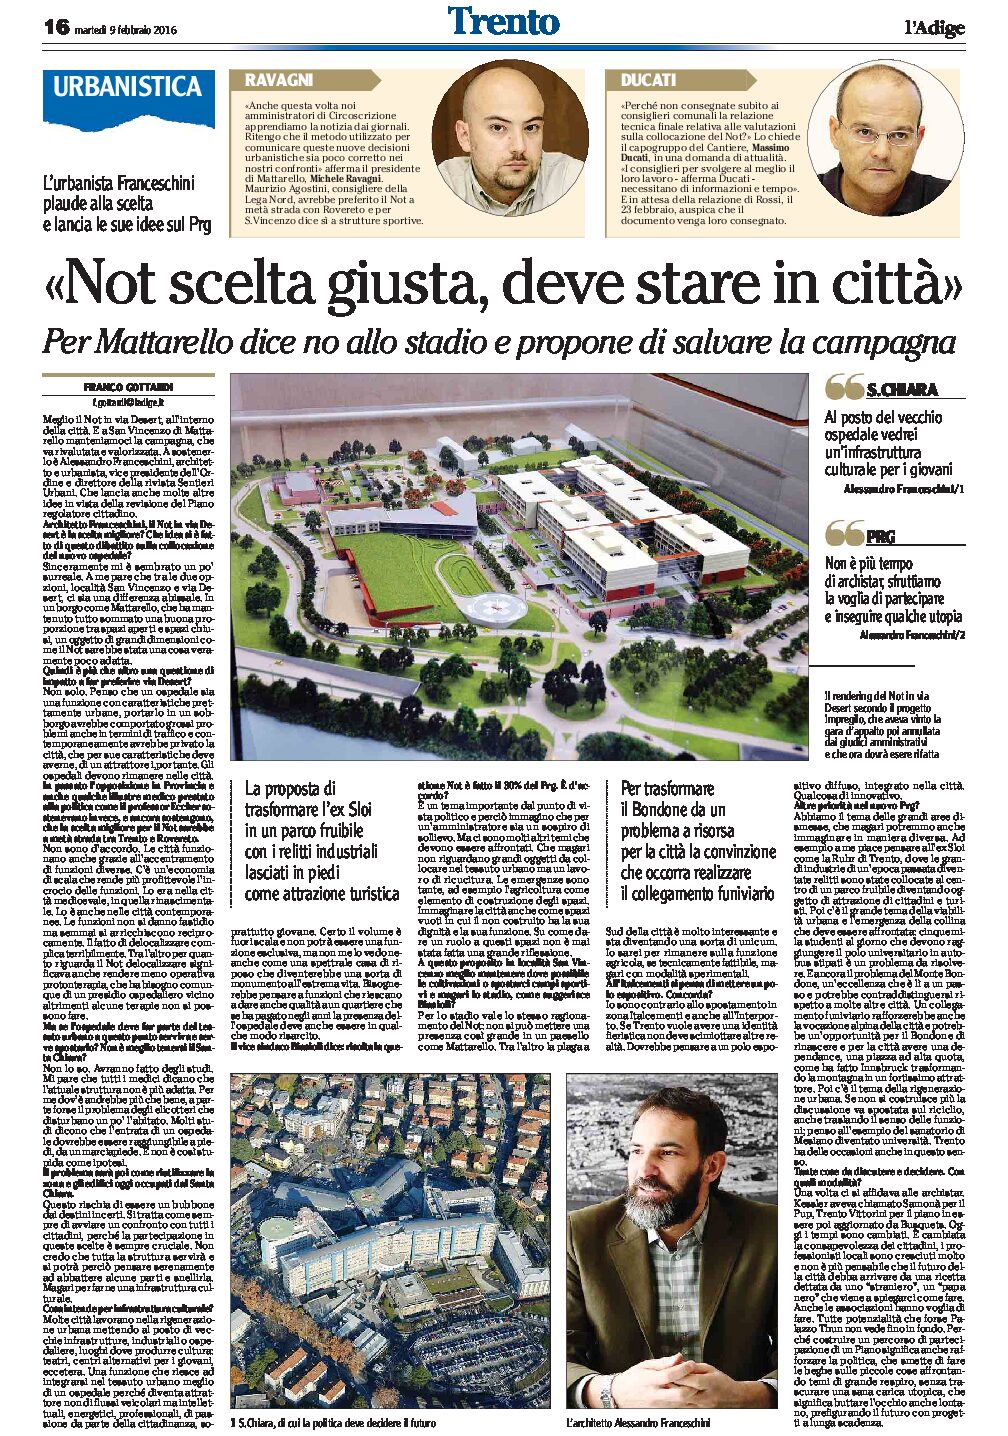 Trento, Not e stadio: Il vicepresidente dell’Ordine degli architetti “Not scelta giusta, deve restare in città” “no allo stadio a Mattarello”